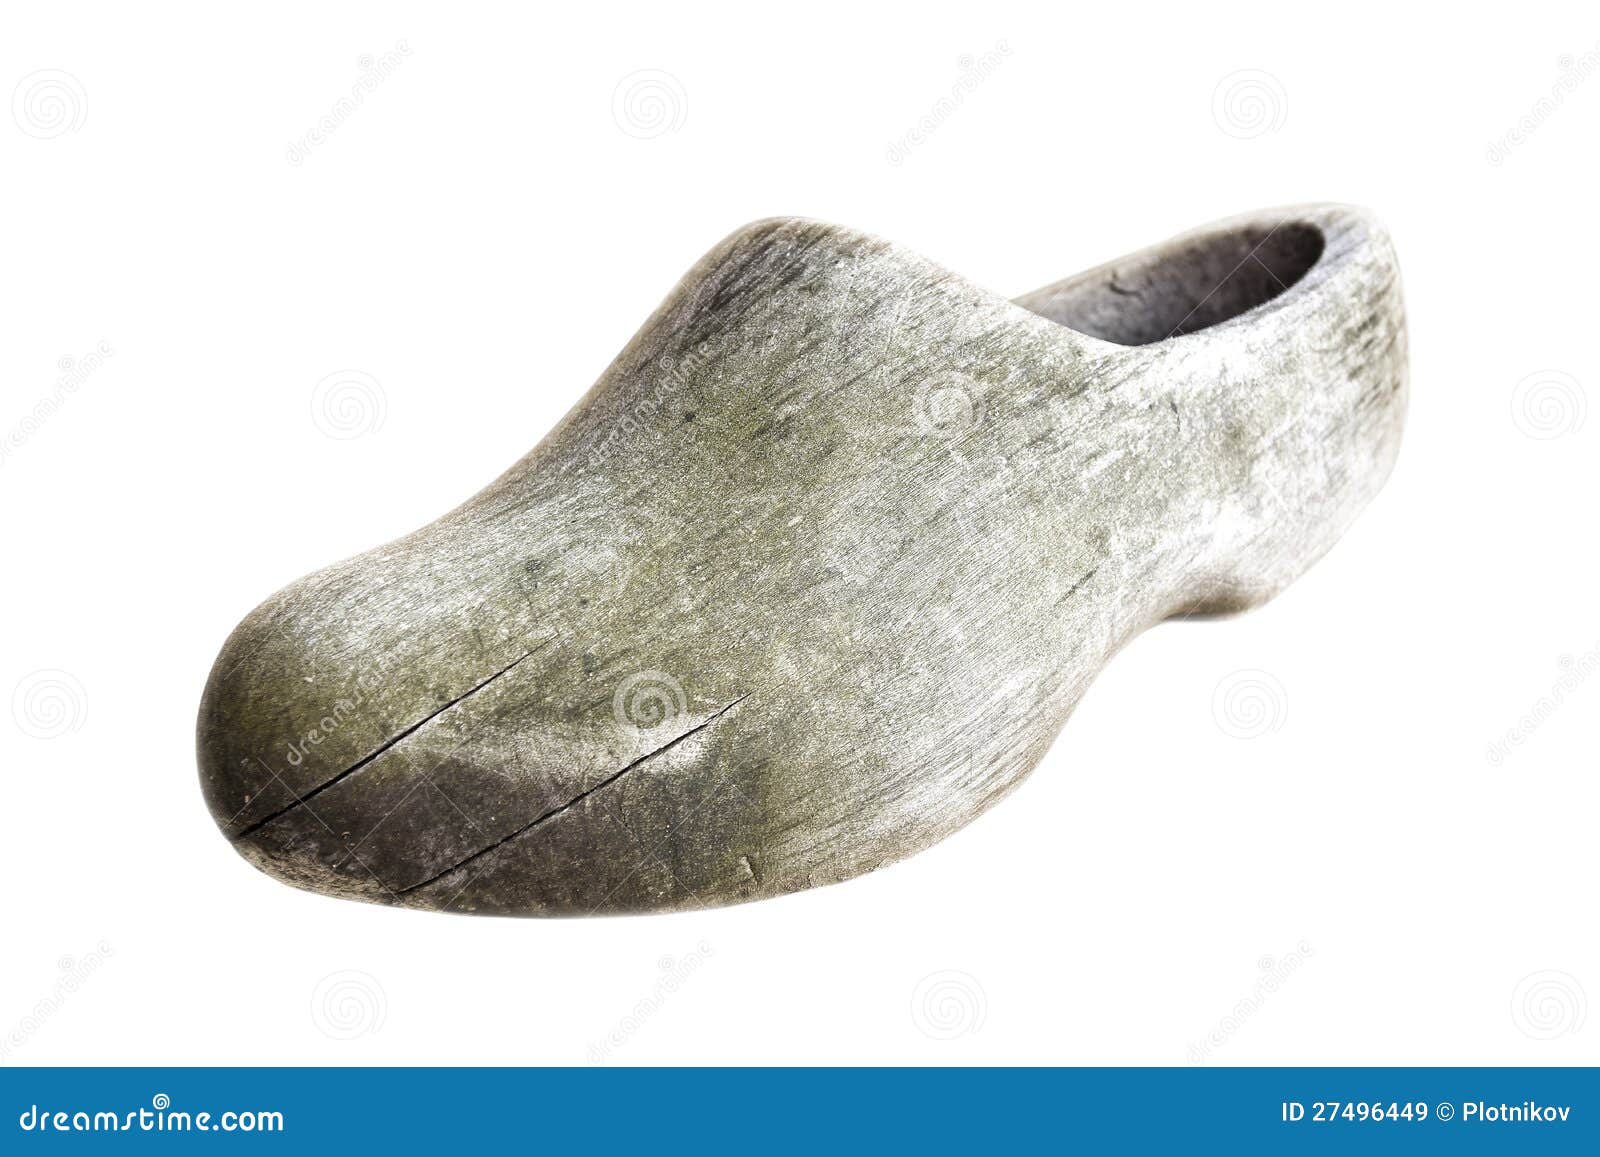 heroïne Boek Kort geleden Klompen. Traditional Dutch Old Shoes. Stock Image - Image of shoe, shoes:  27496449